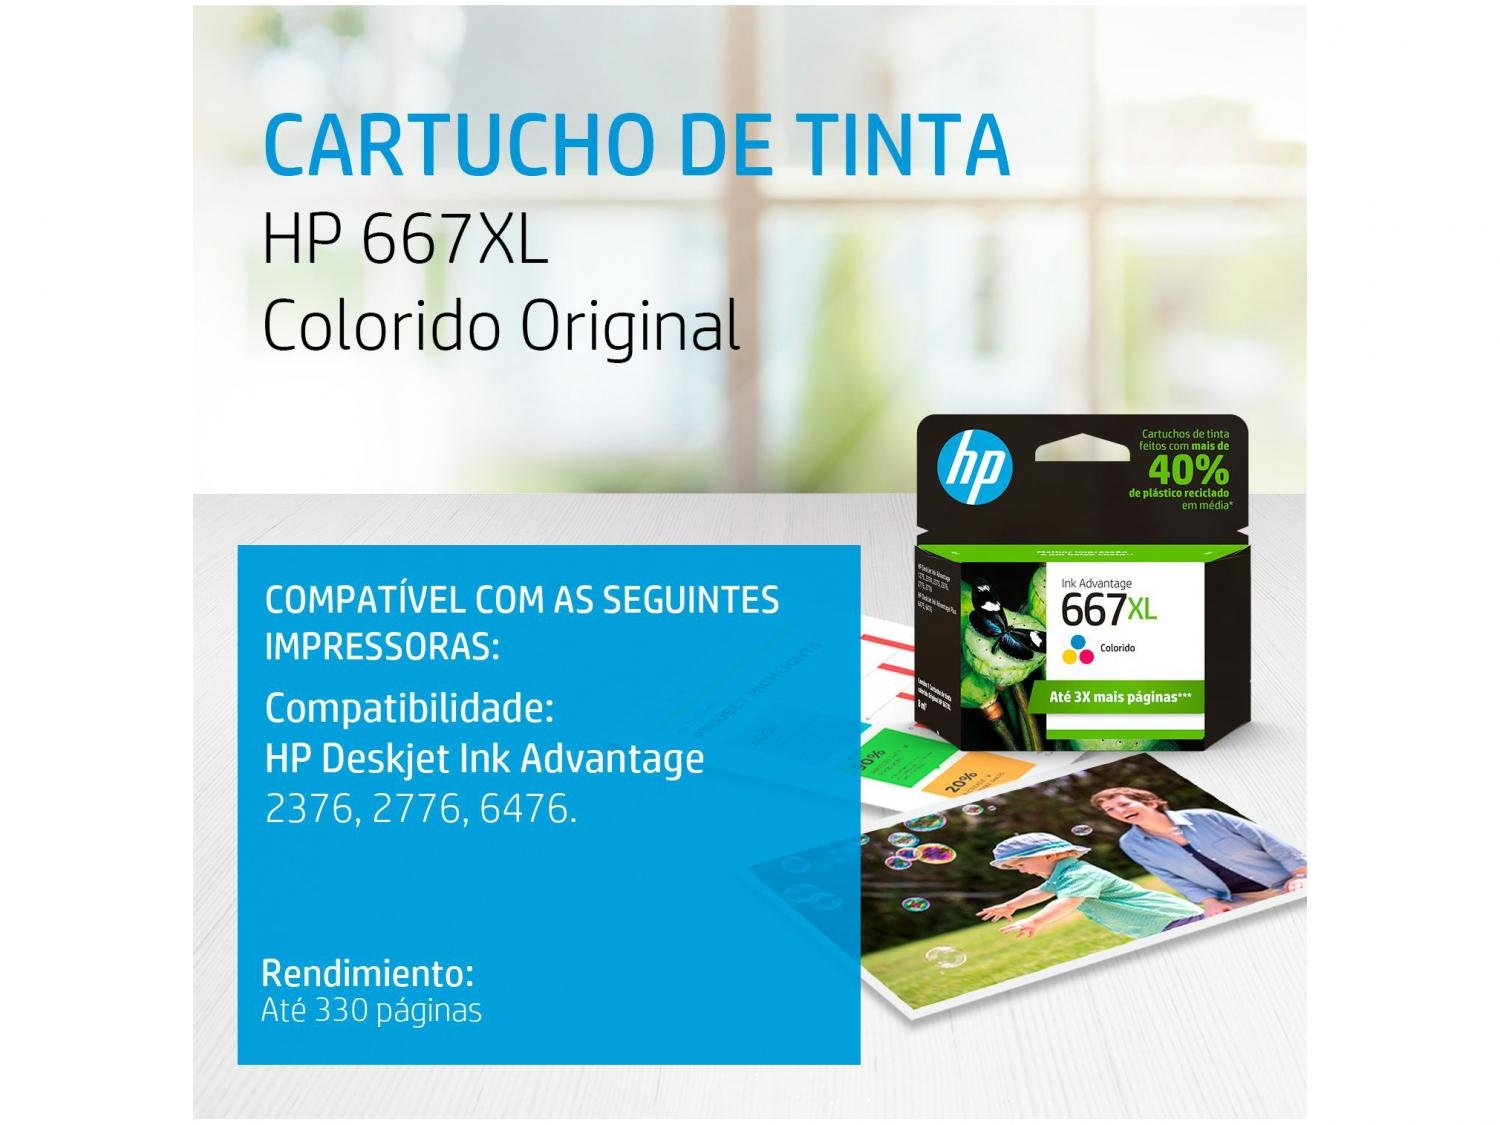 Cartucho de Tinta HP 667XL Colorido Original - 1